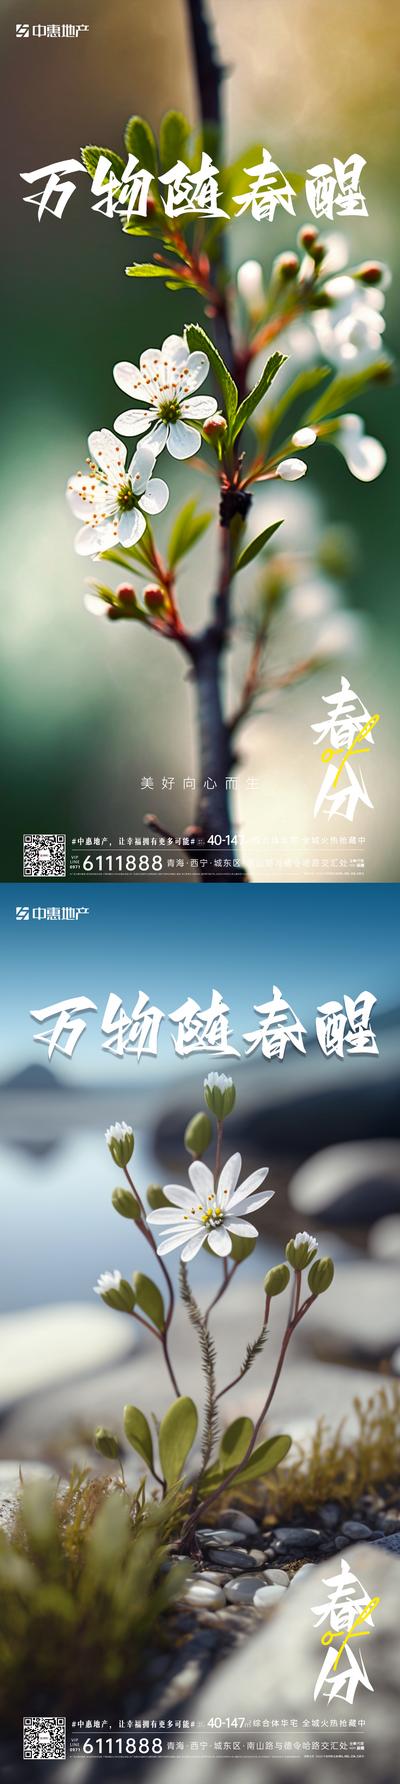 南门网 广告 海报 节气 春分 系列 桃花 树枝